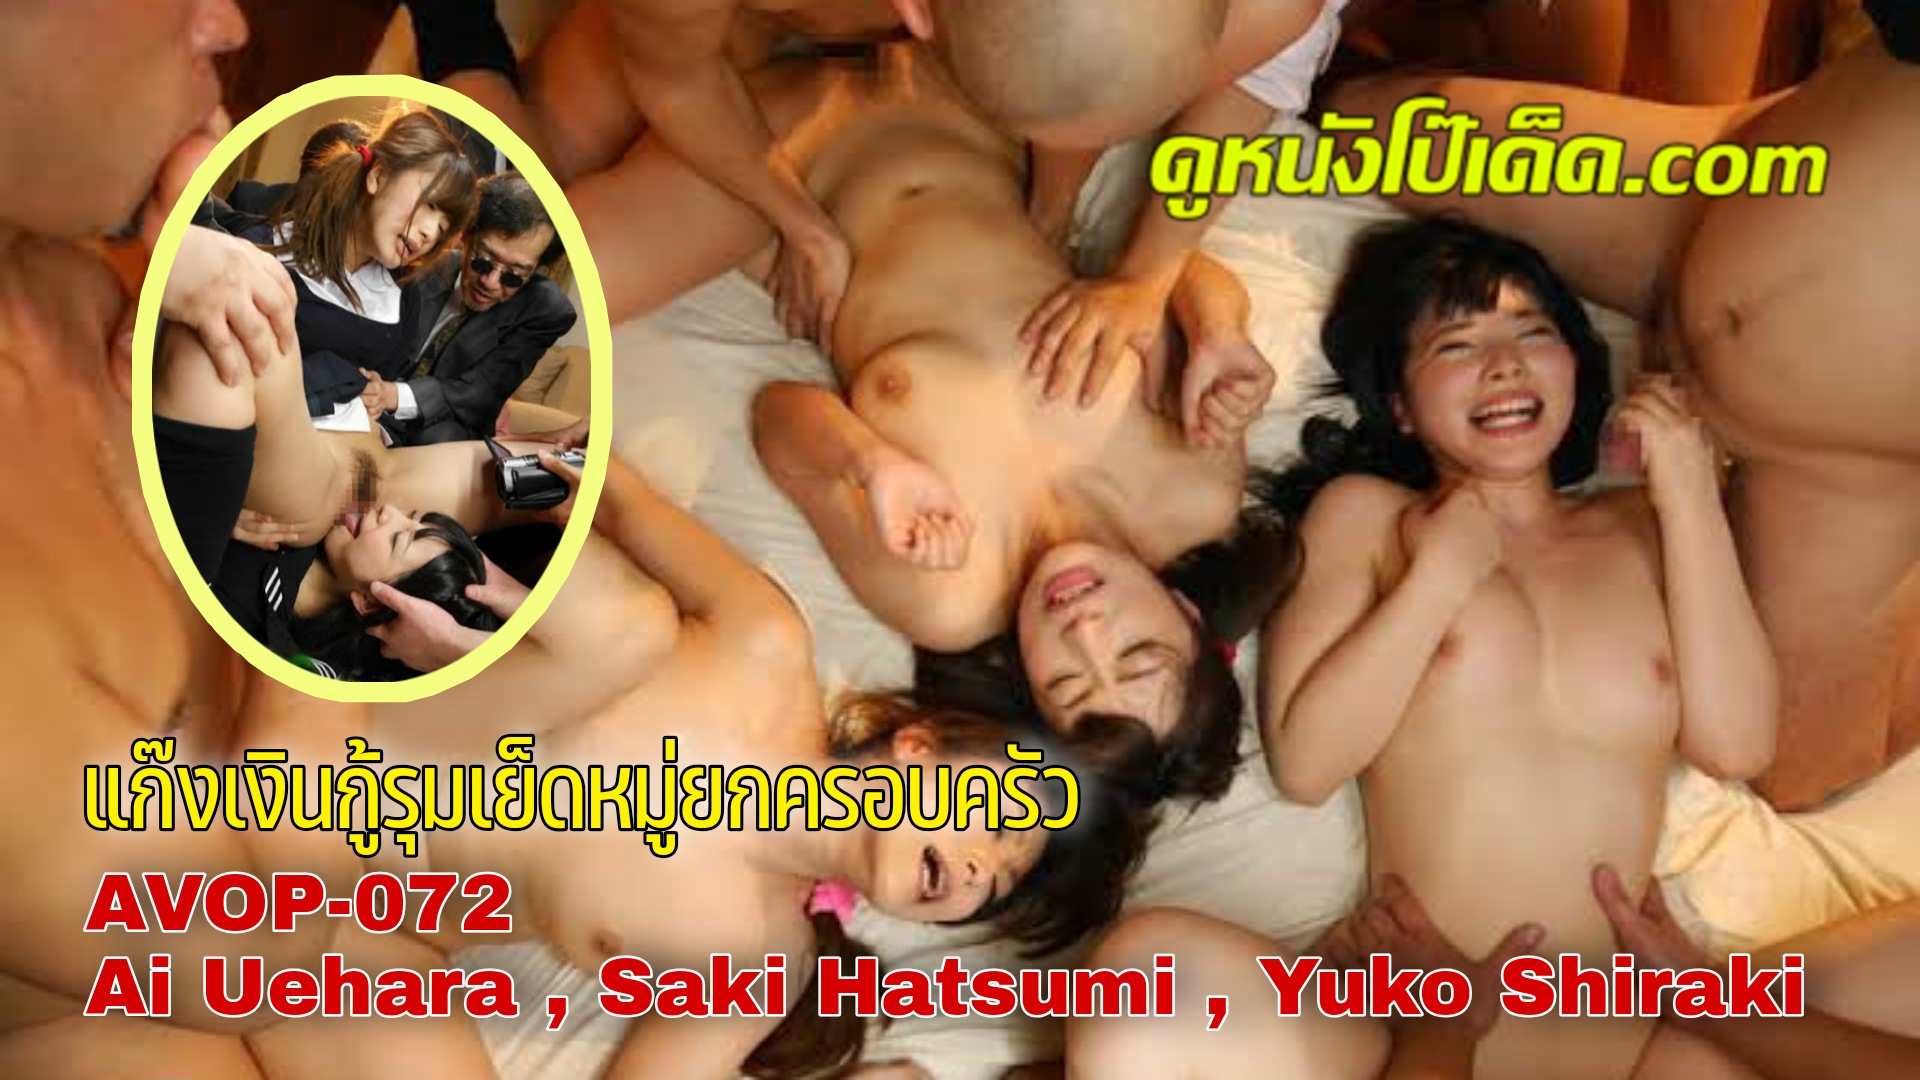 [ซับไทย] หนังเอวีล้อเลียนมังงะดัง AVOP-072 ไอ อุเอฮาระ Ai Uehara อันเซ็นเซอร์ Saki Hatsumi & Yuko Shiraki สามแม่ลูกถูกแก๊งทวงหนี้นอกระบบรุมโทรมในบ้าน รุมเย็ดแม่ก่อนค่อยมาแหกหีลูกสาว เด้าหีเอา เด้าหีเอา ยังคับอมนกเขาก่อนกลับอีก